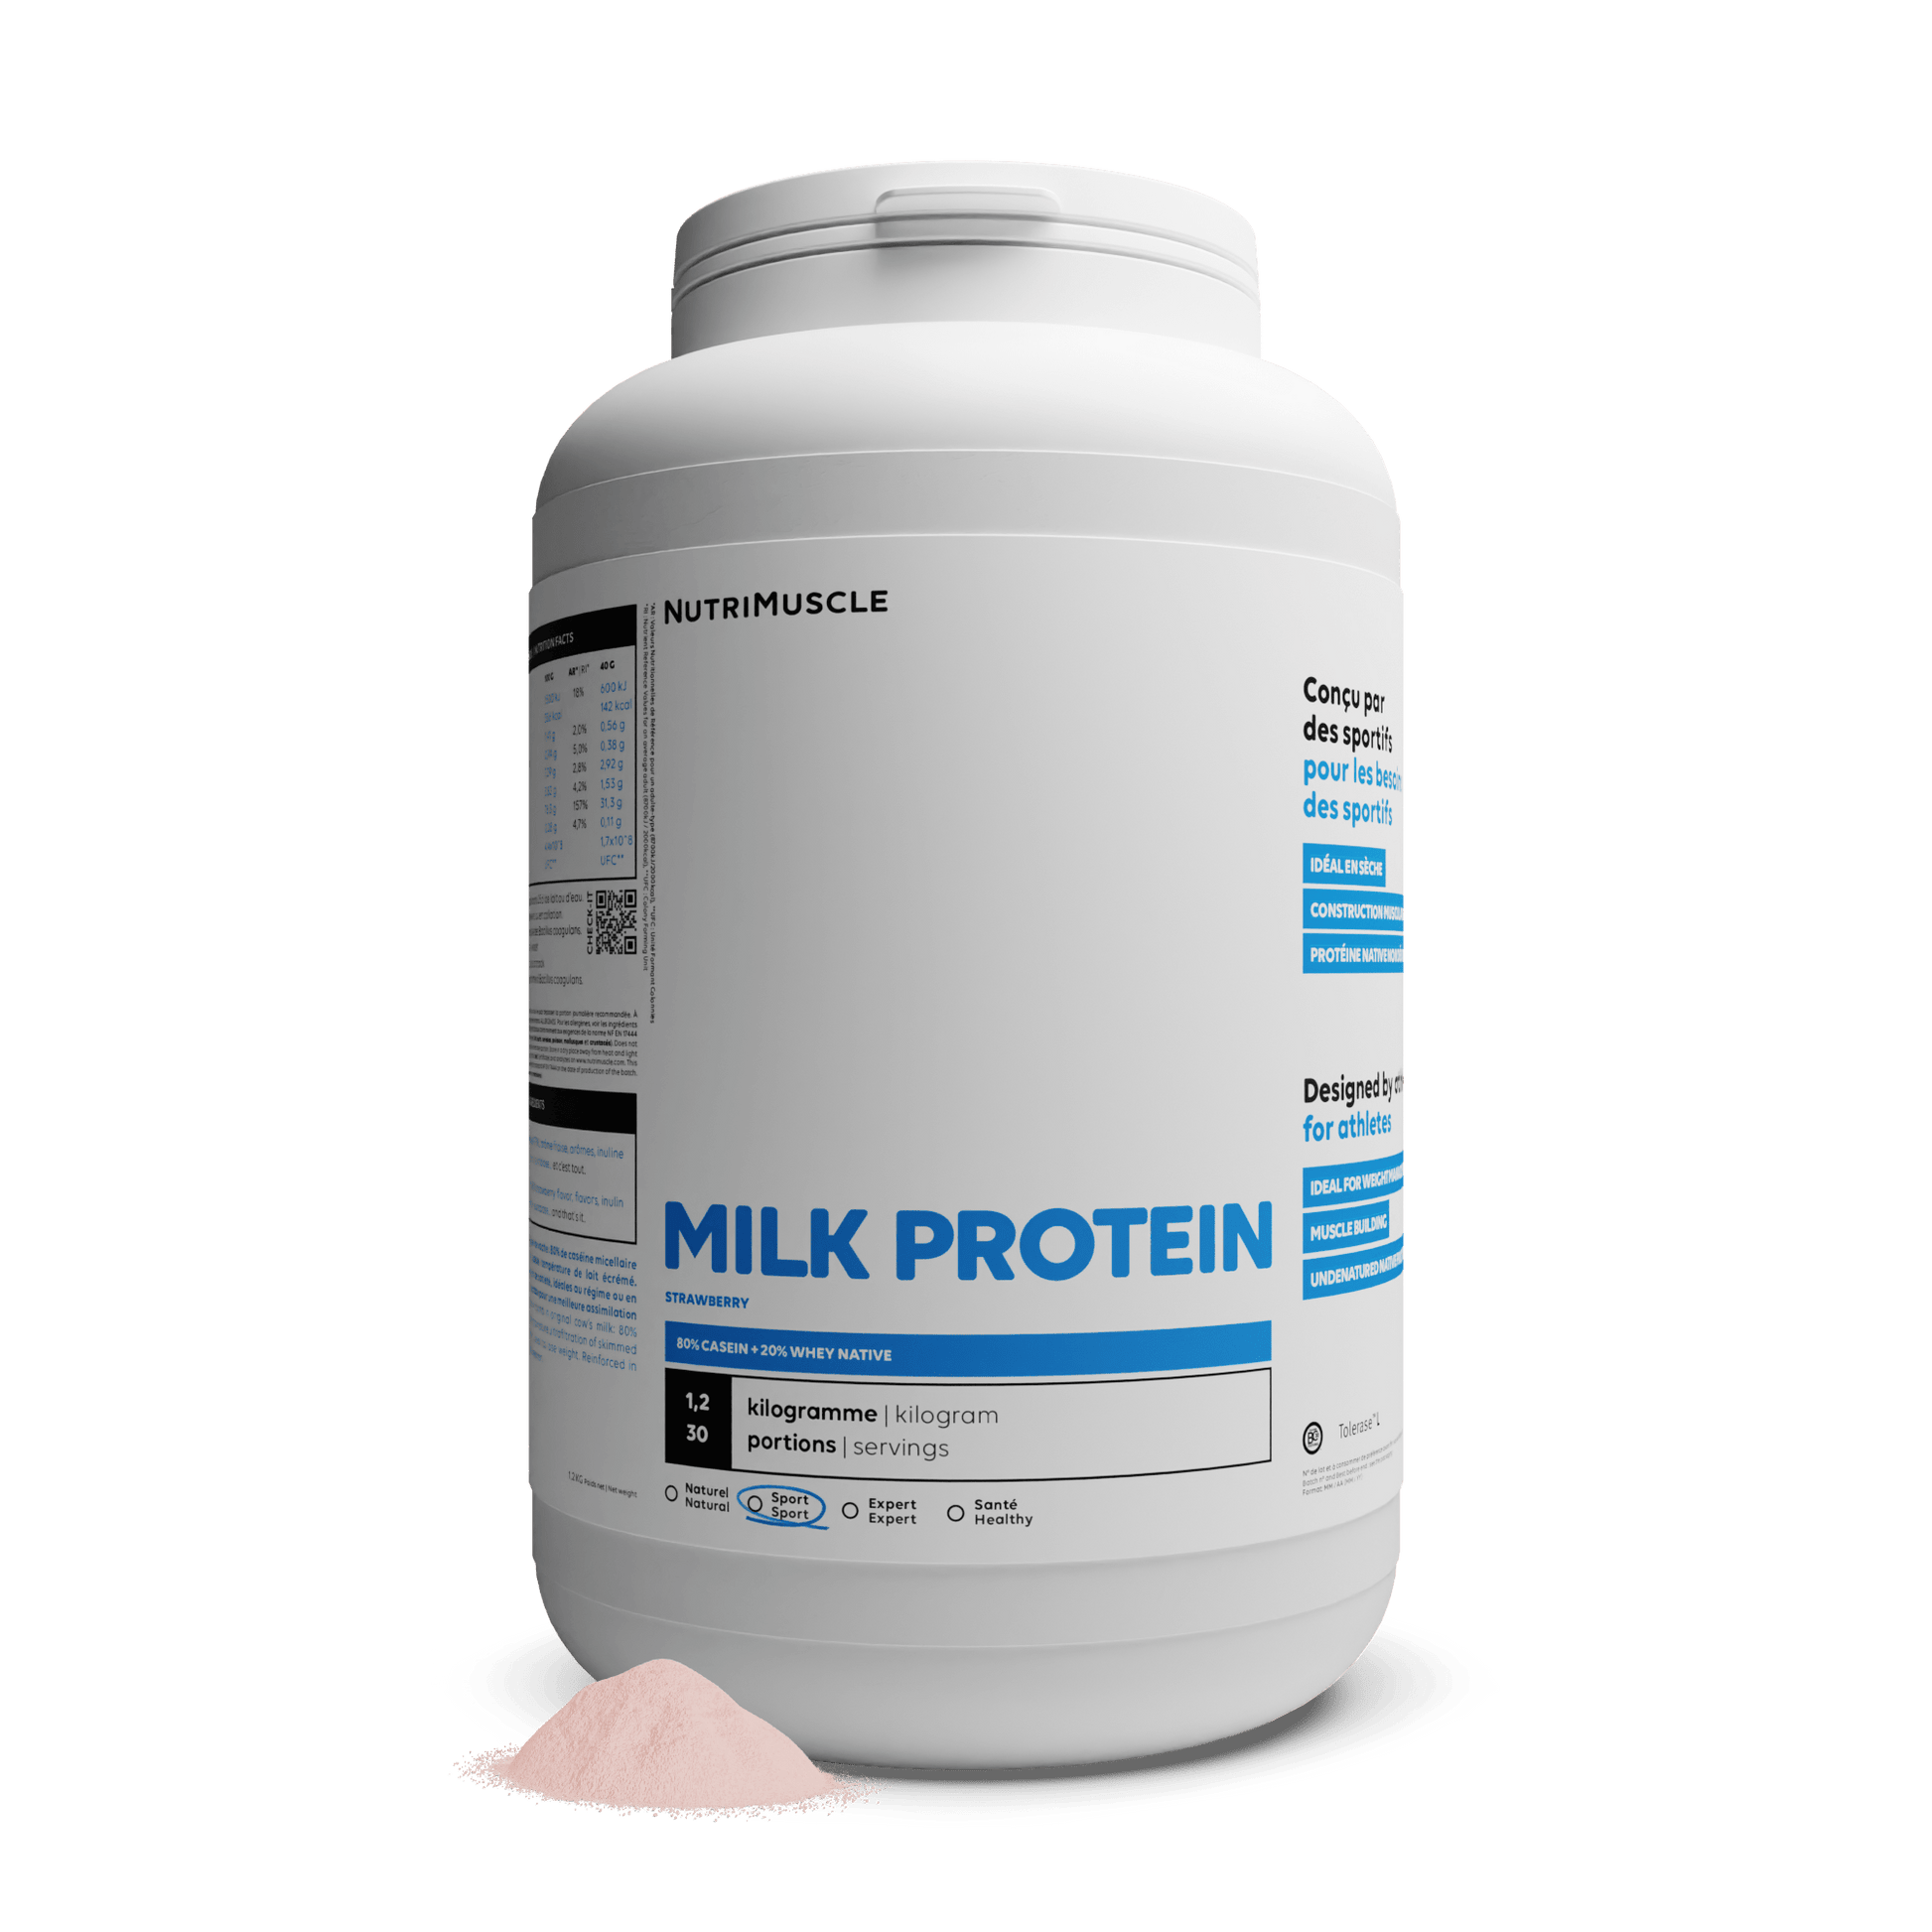 Nutrimuscle Protéines Fraise / 1.20 kg Protéines Totales